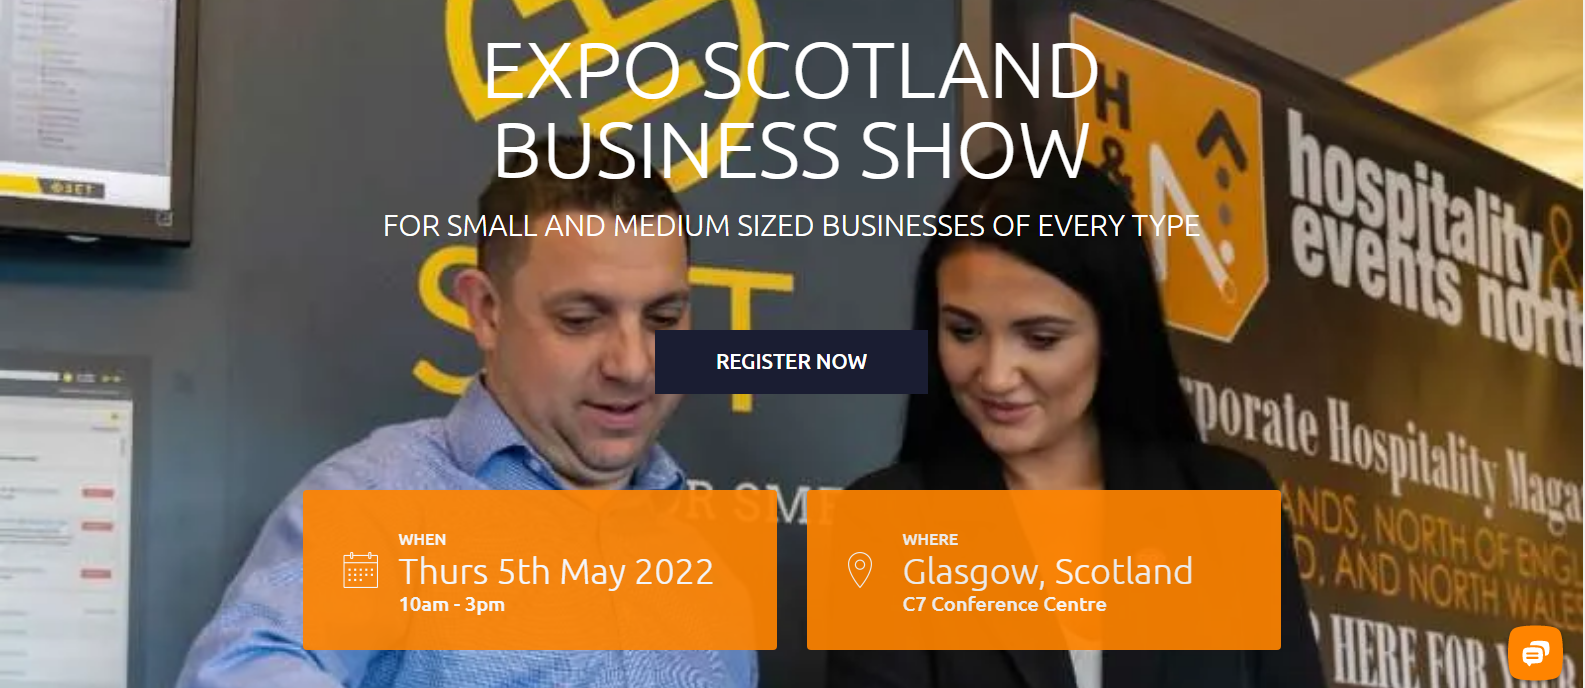 Expo Scotland Business Show 2022